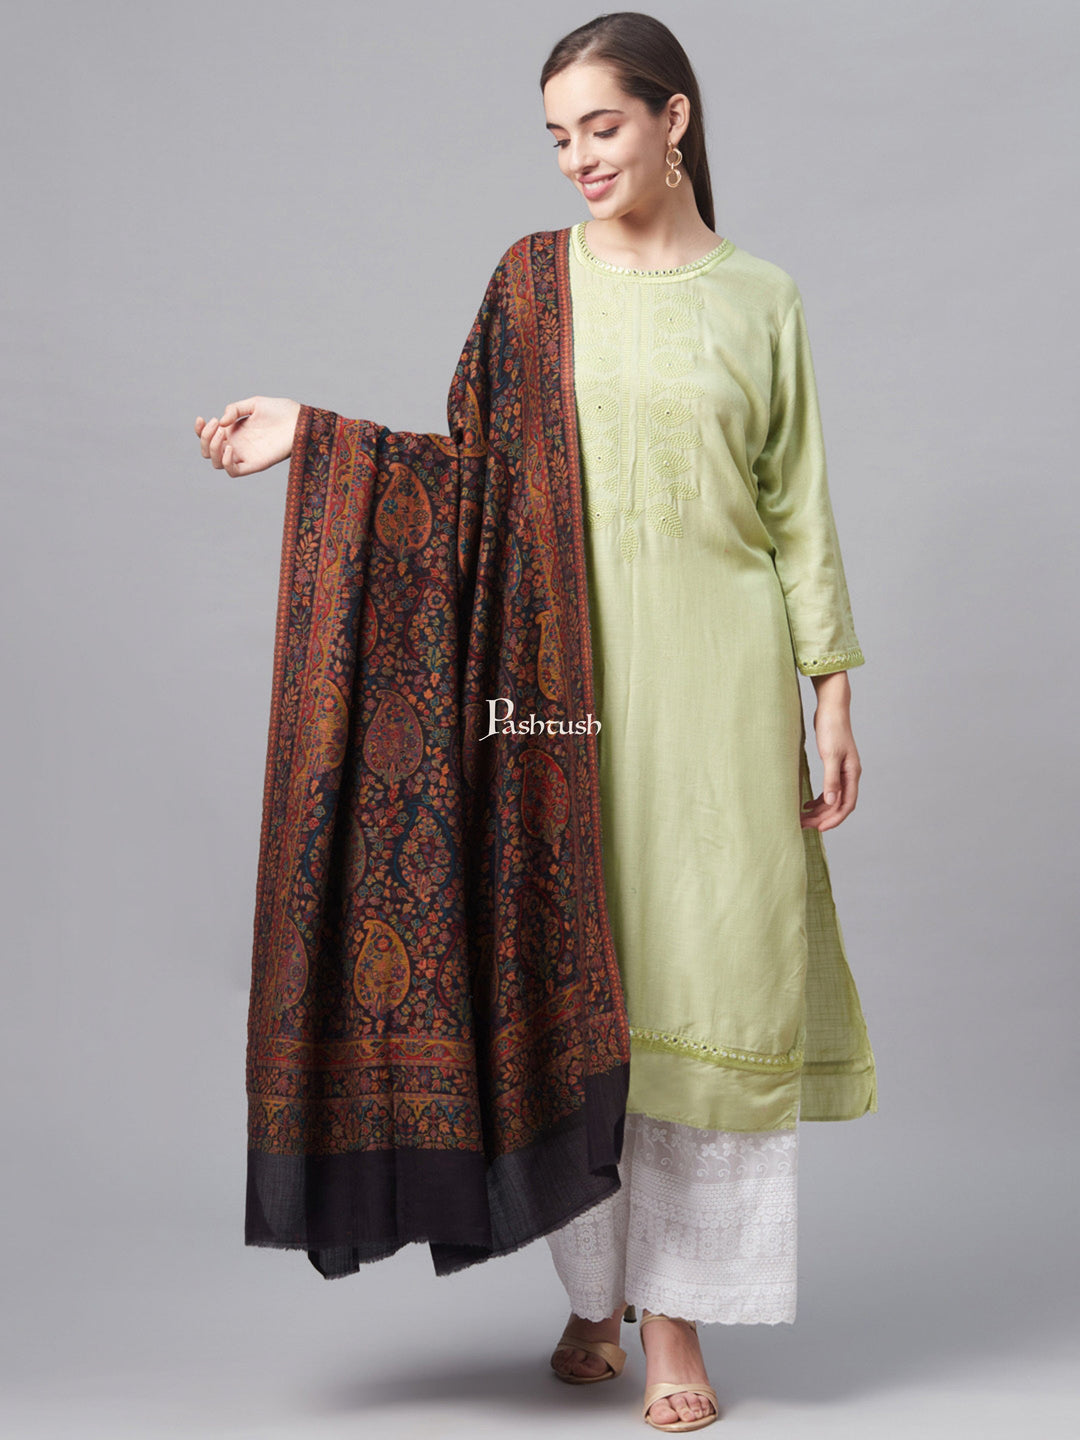 Pashtush India Womens Shawls Pashtush Womens Soft Ethnic Weave Shawl, Multicoloured